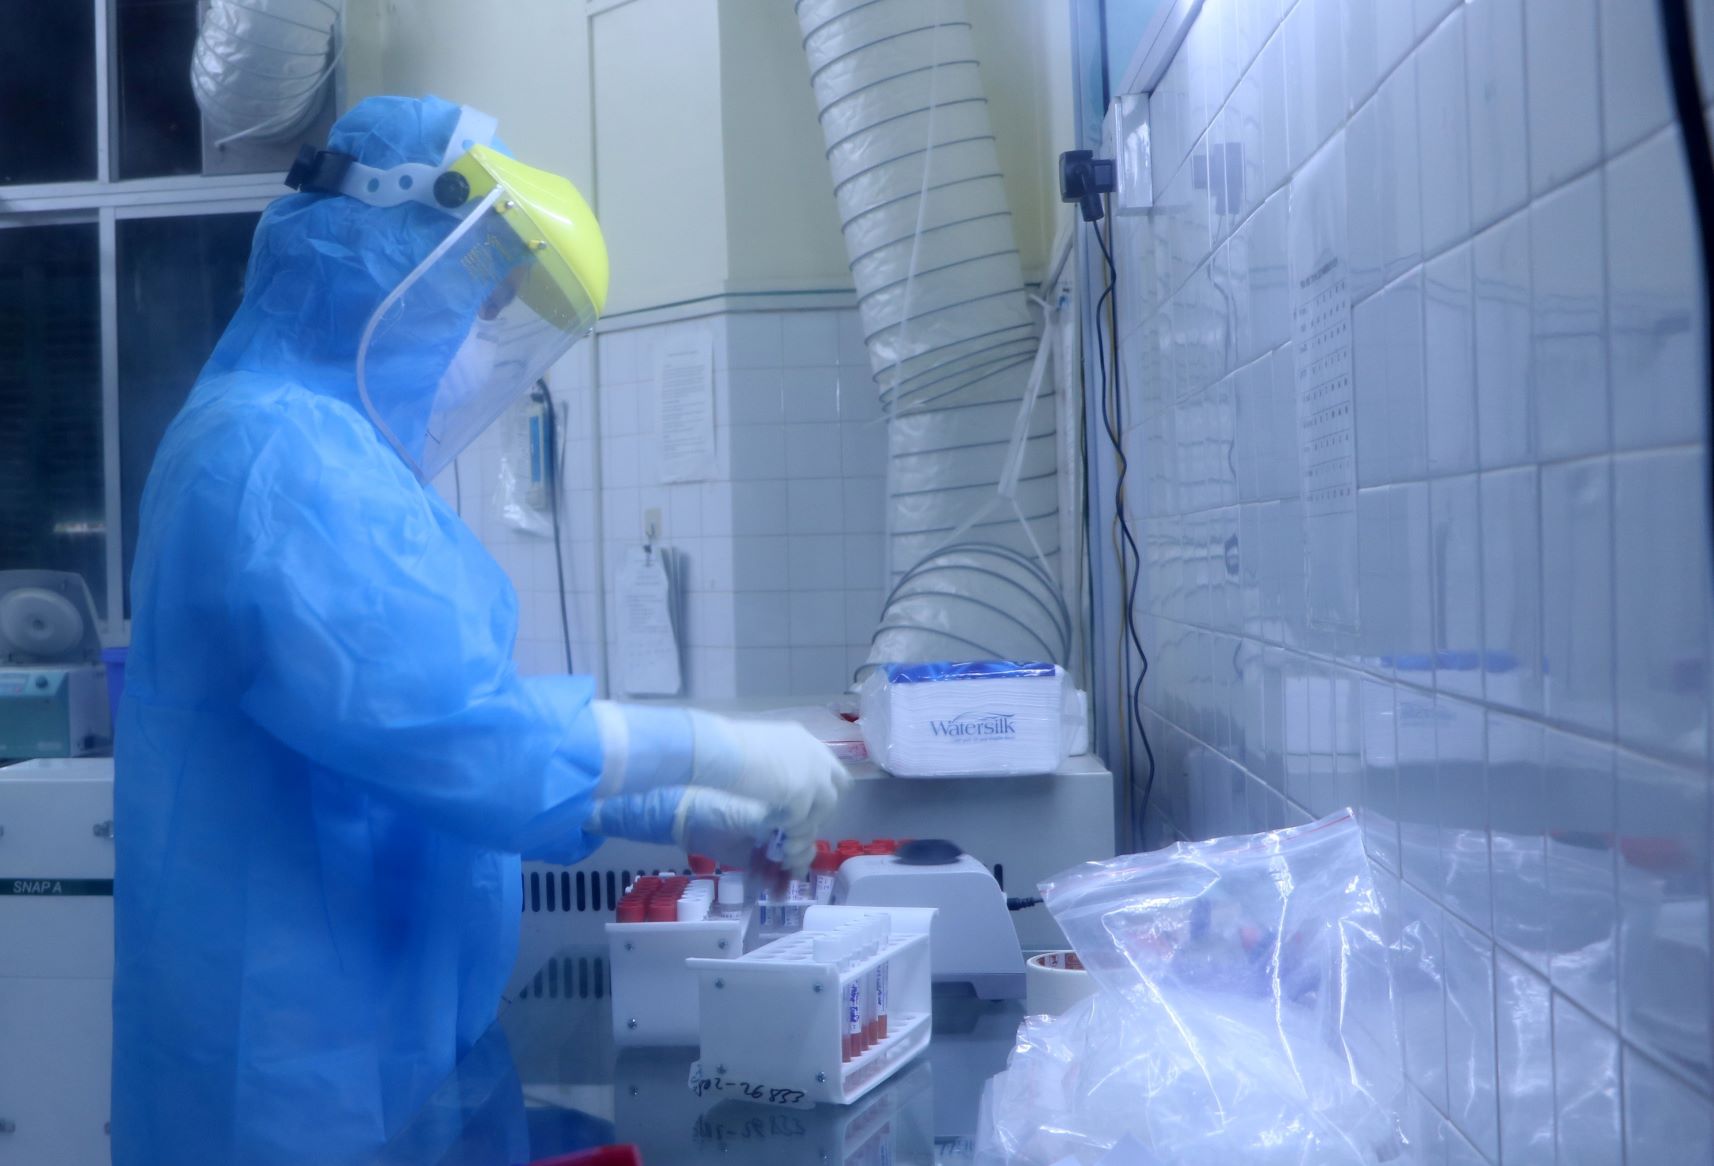 Xét nghiệm mẫu bệnh phẩm liên quan đến virus SARS-CoV-2 tại Trung tâm Y tế dựu phòng Hải Phòng. (Ảnh: Minh Thu/TTXVN)